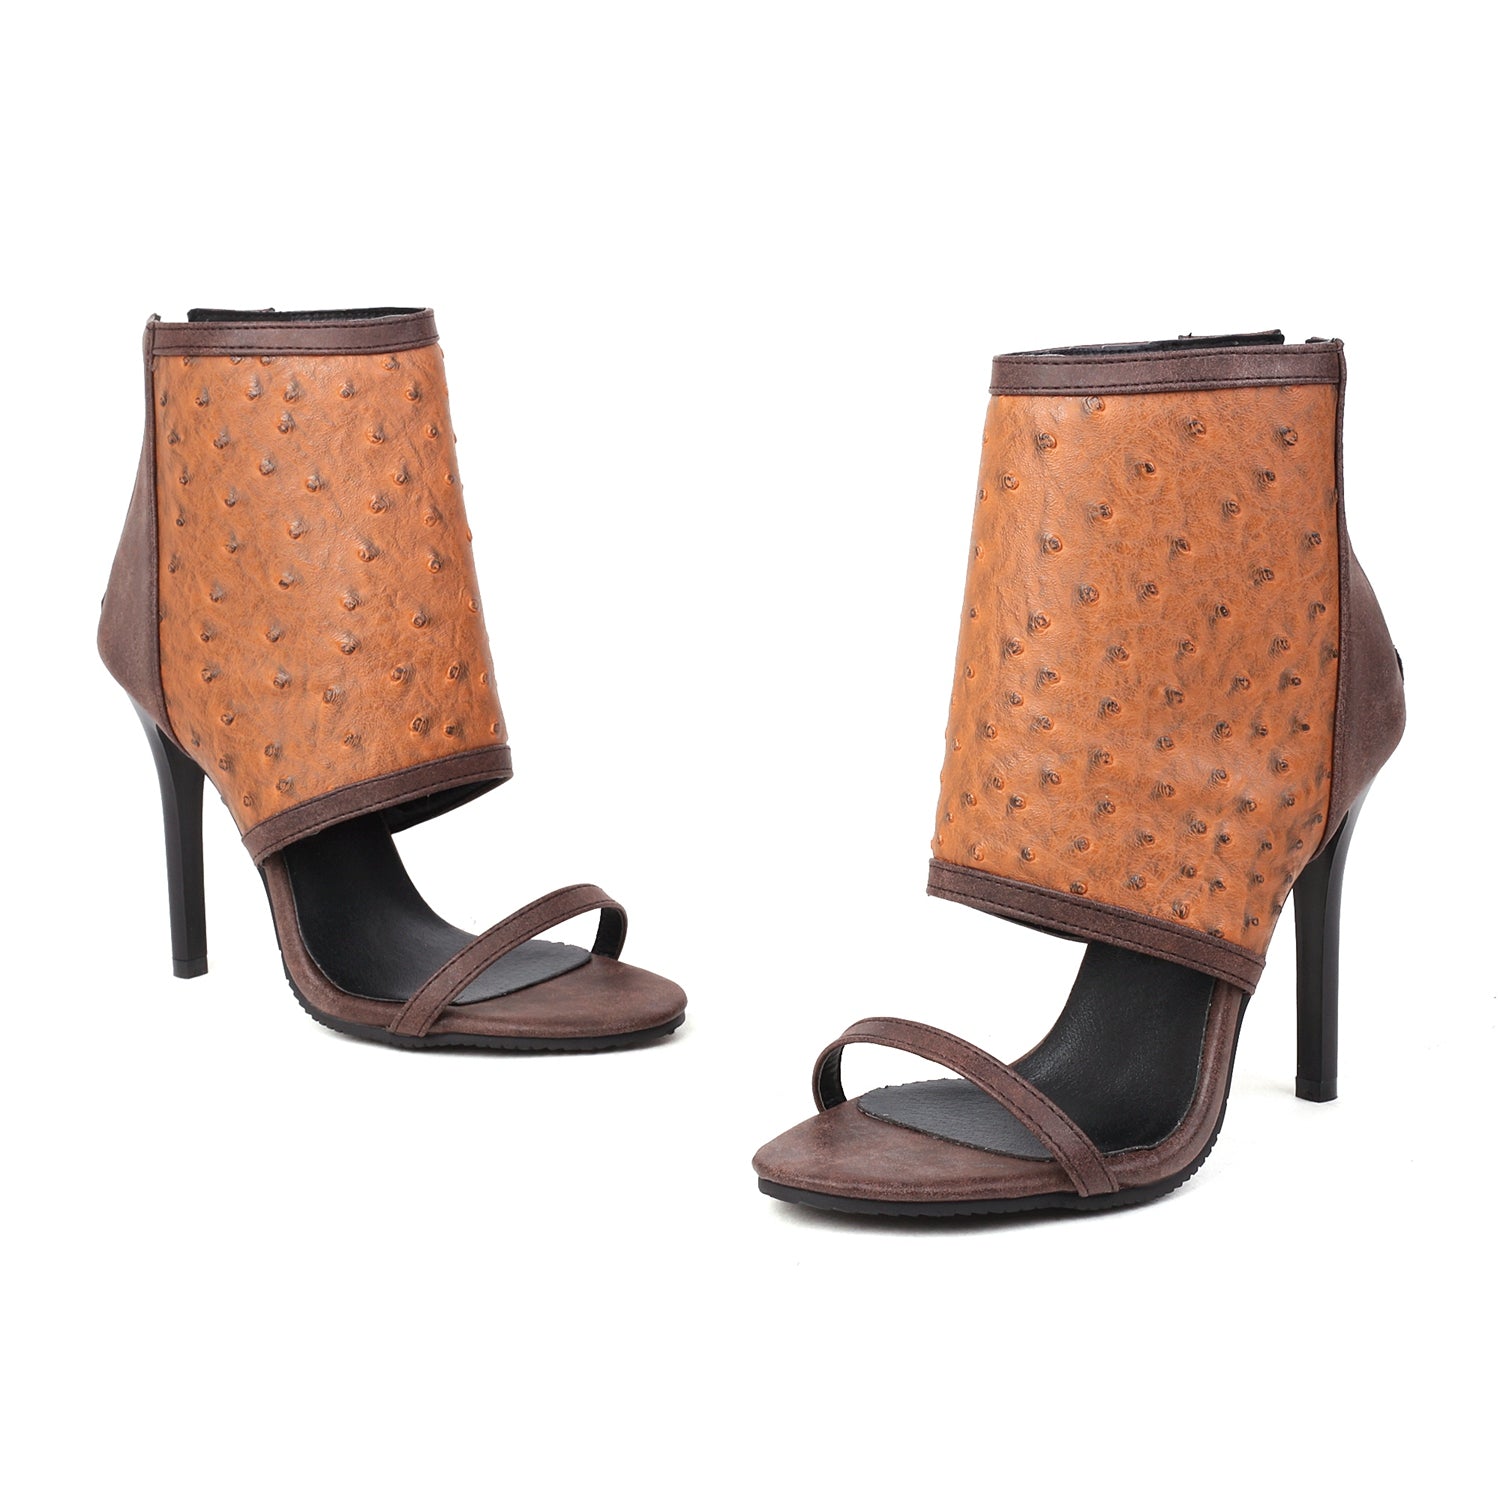 Bigsizeheels Stiletto Heel Zipper Suede Upper Ankle Strap Sandals - Coffee best oversized womens heels are from bigsizeheel®